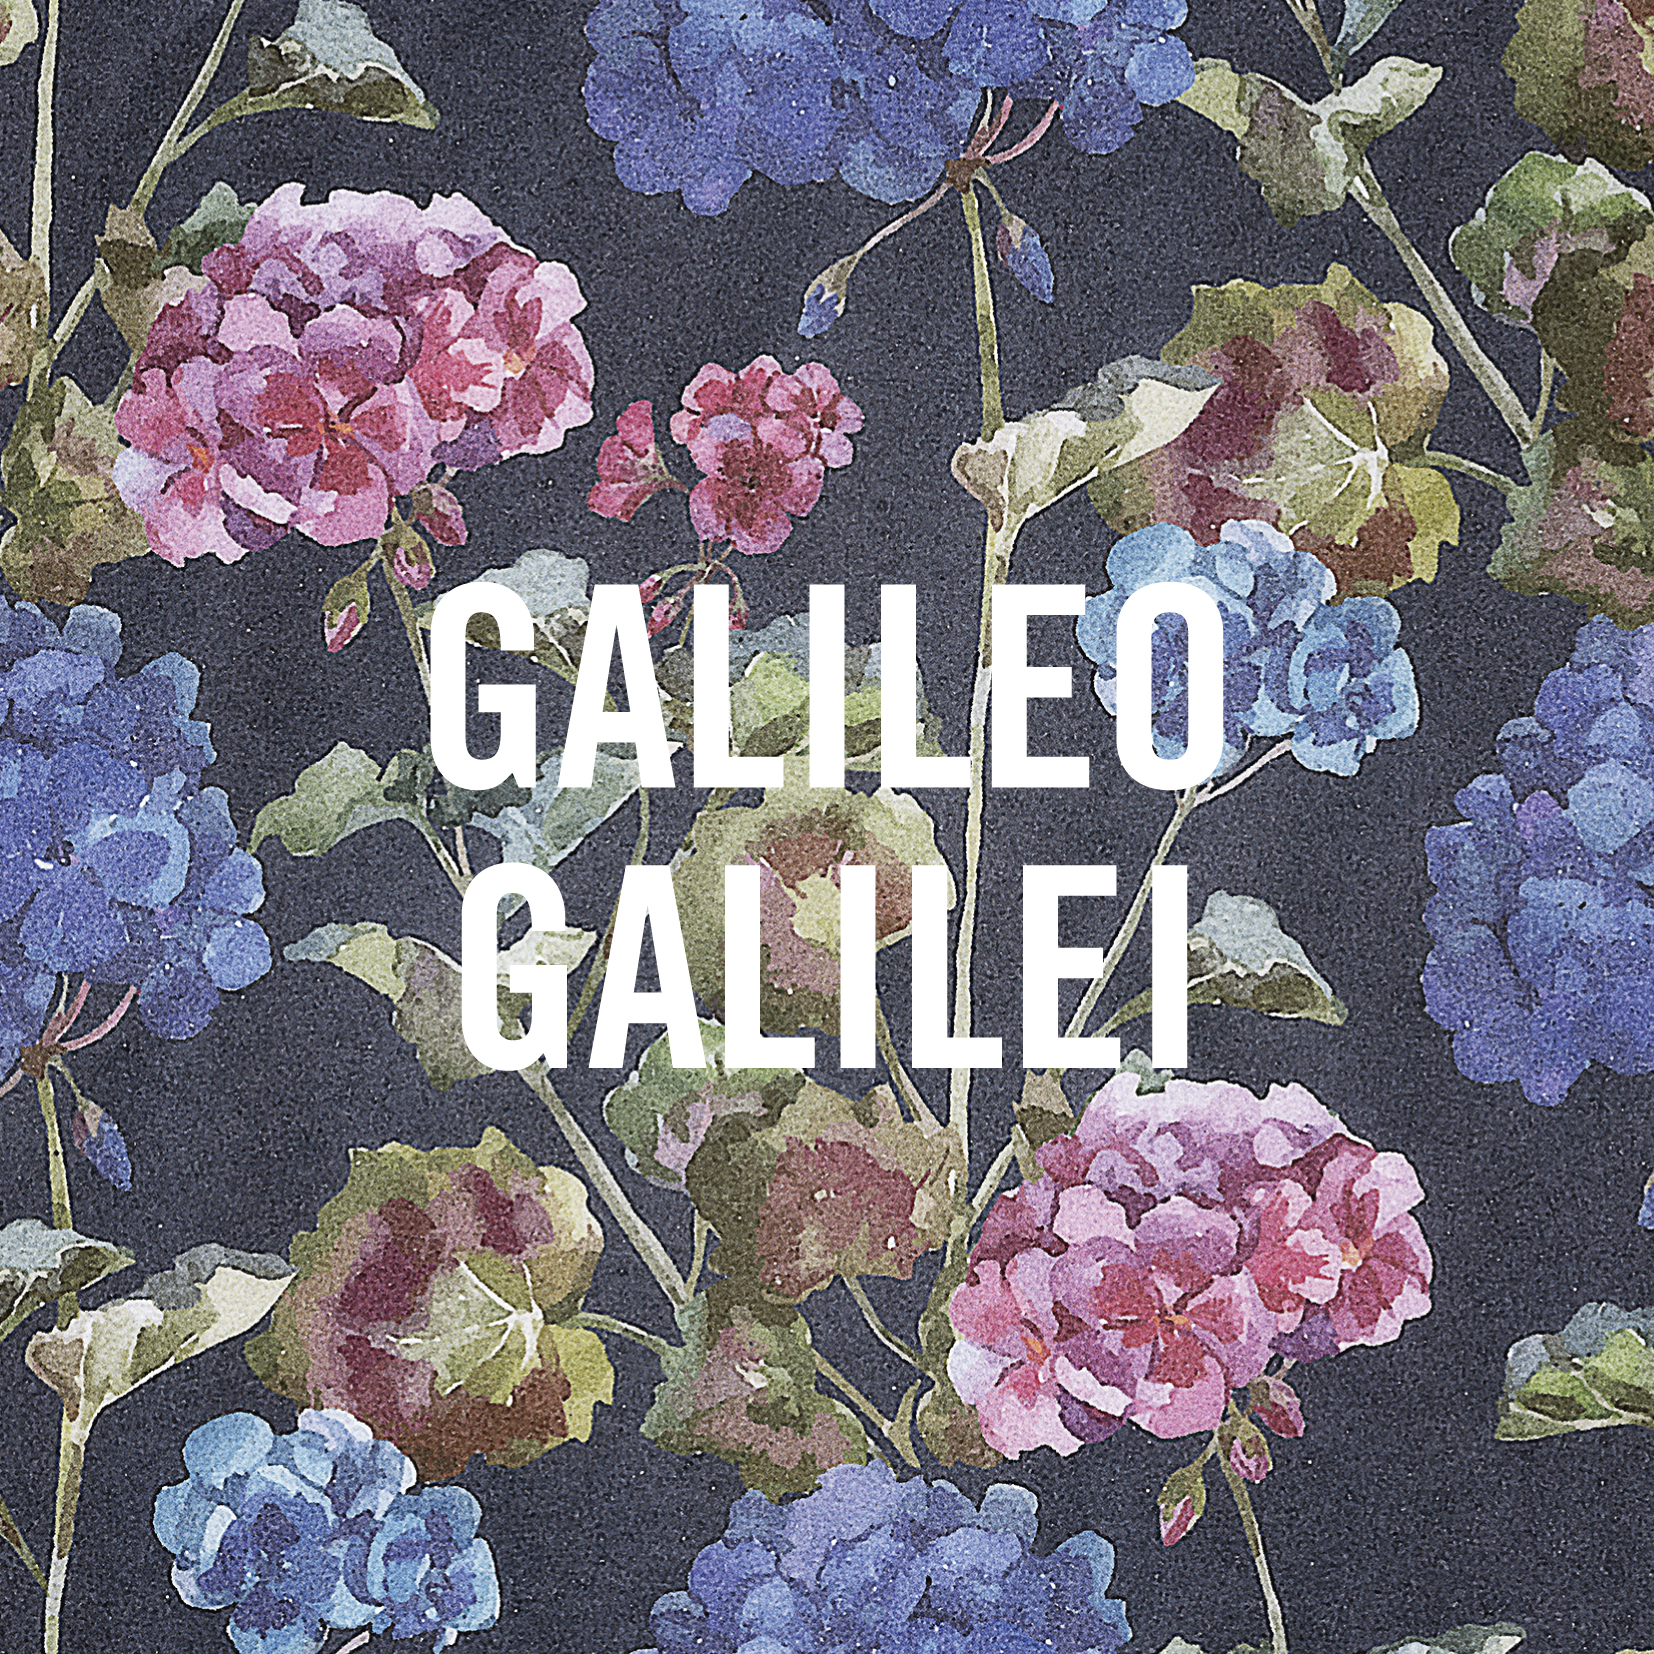 Galileo Galilei 「嵐のあとで」